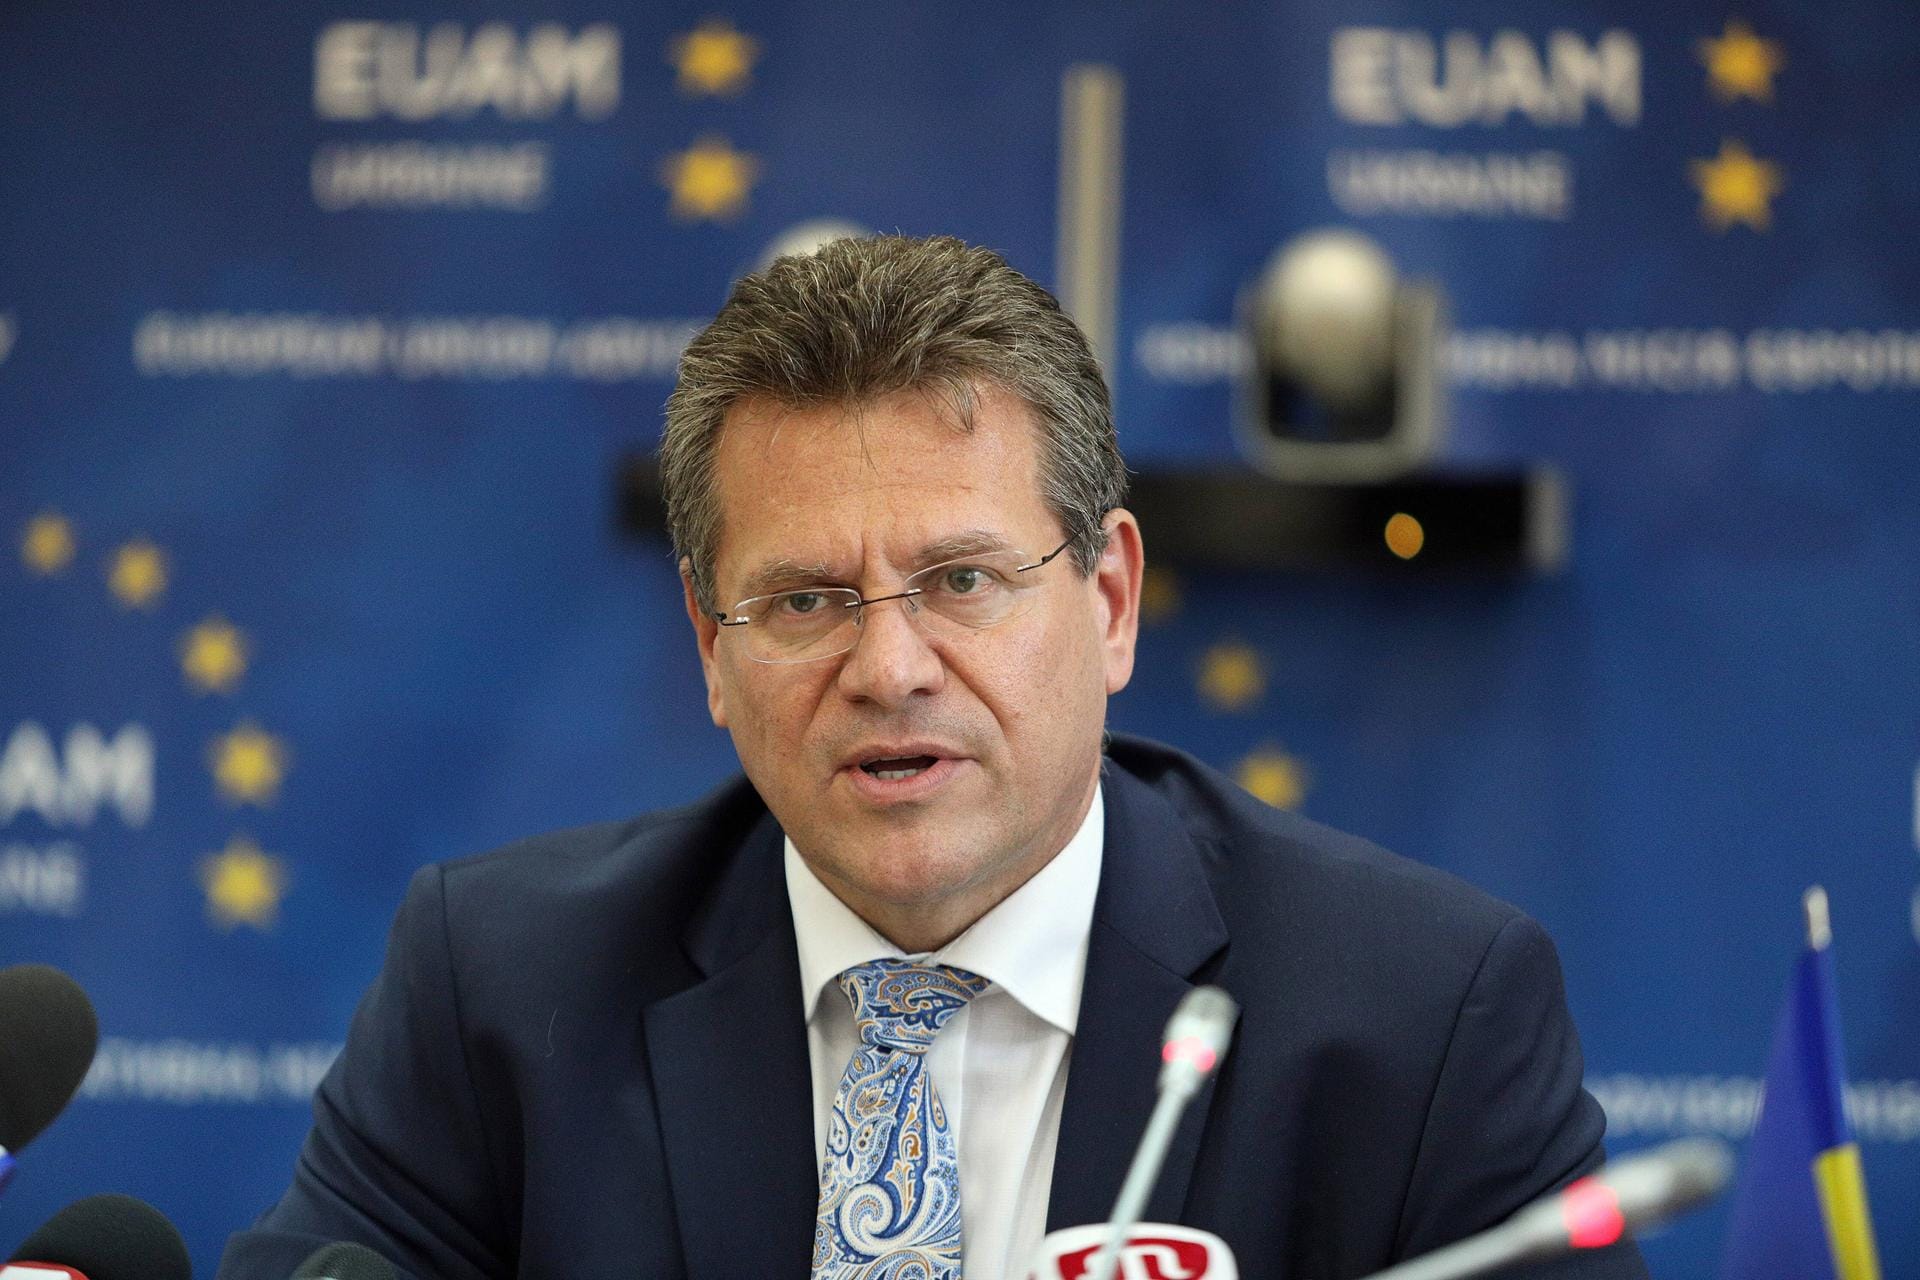 Maros Sefcovic aus der Slowakei soll sich um interinstitutionelle Beziehungen kümmern: Der 53-Jährige ist seit 2009 Mitglied der EU-Kommission und seit 2010 einer ihrer Vizepräsidenten. Zuletzt war er für die Energieunion zuständig.